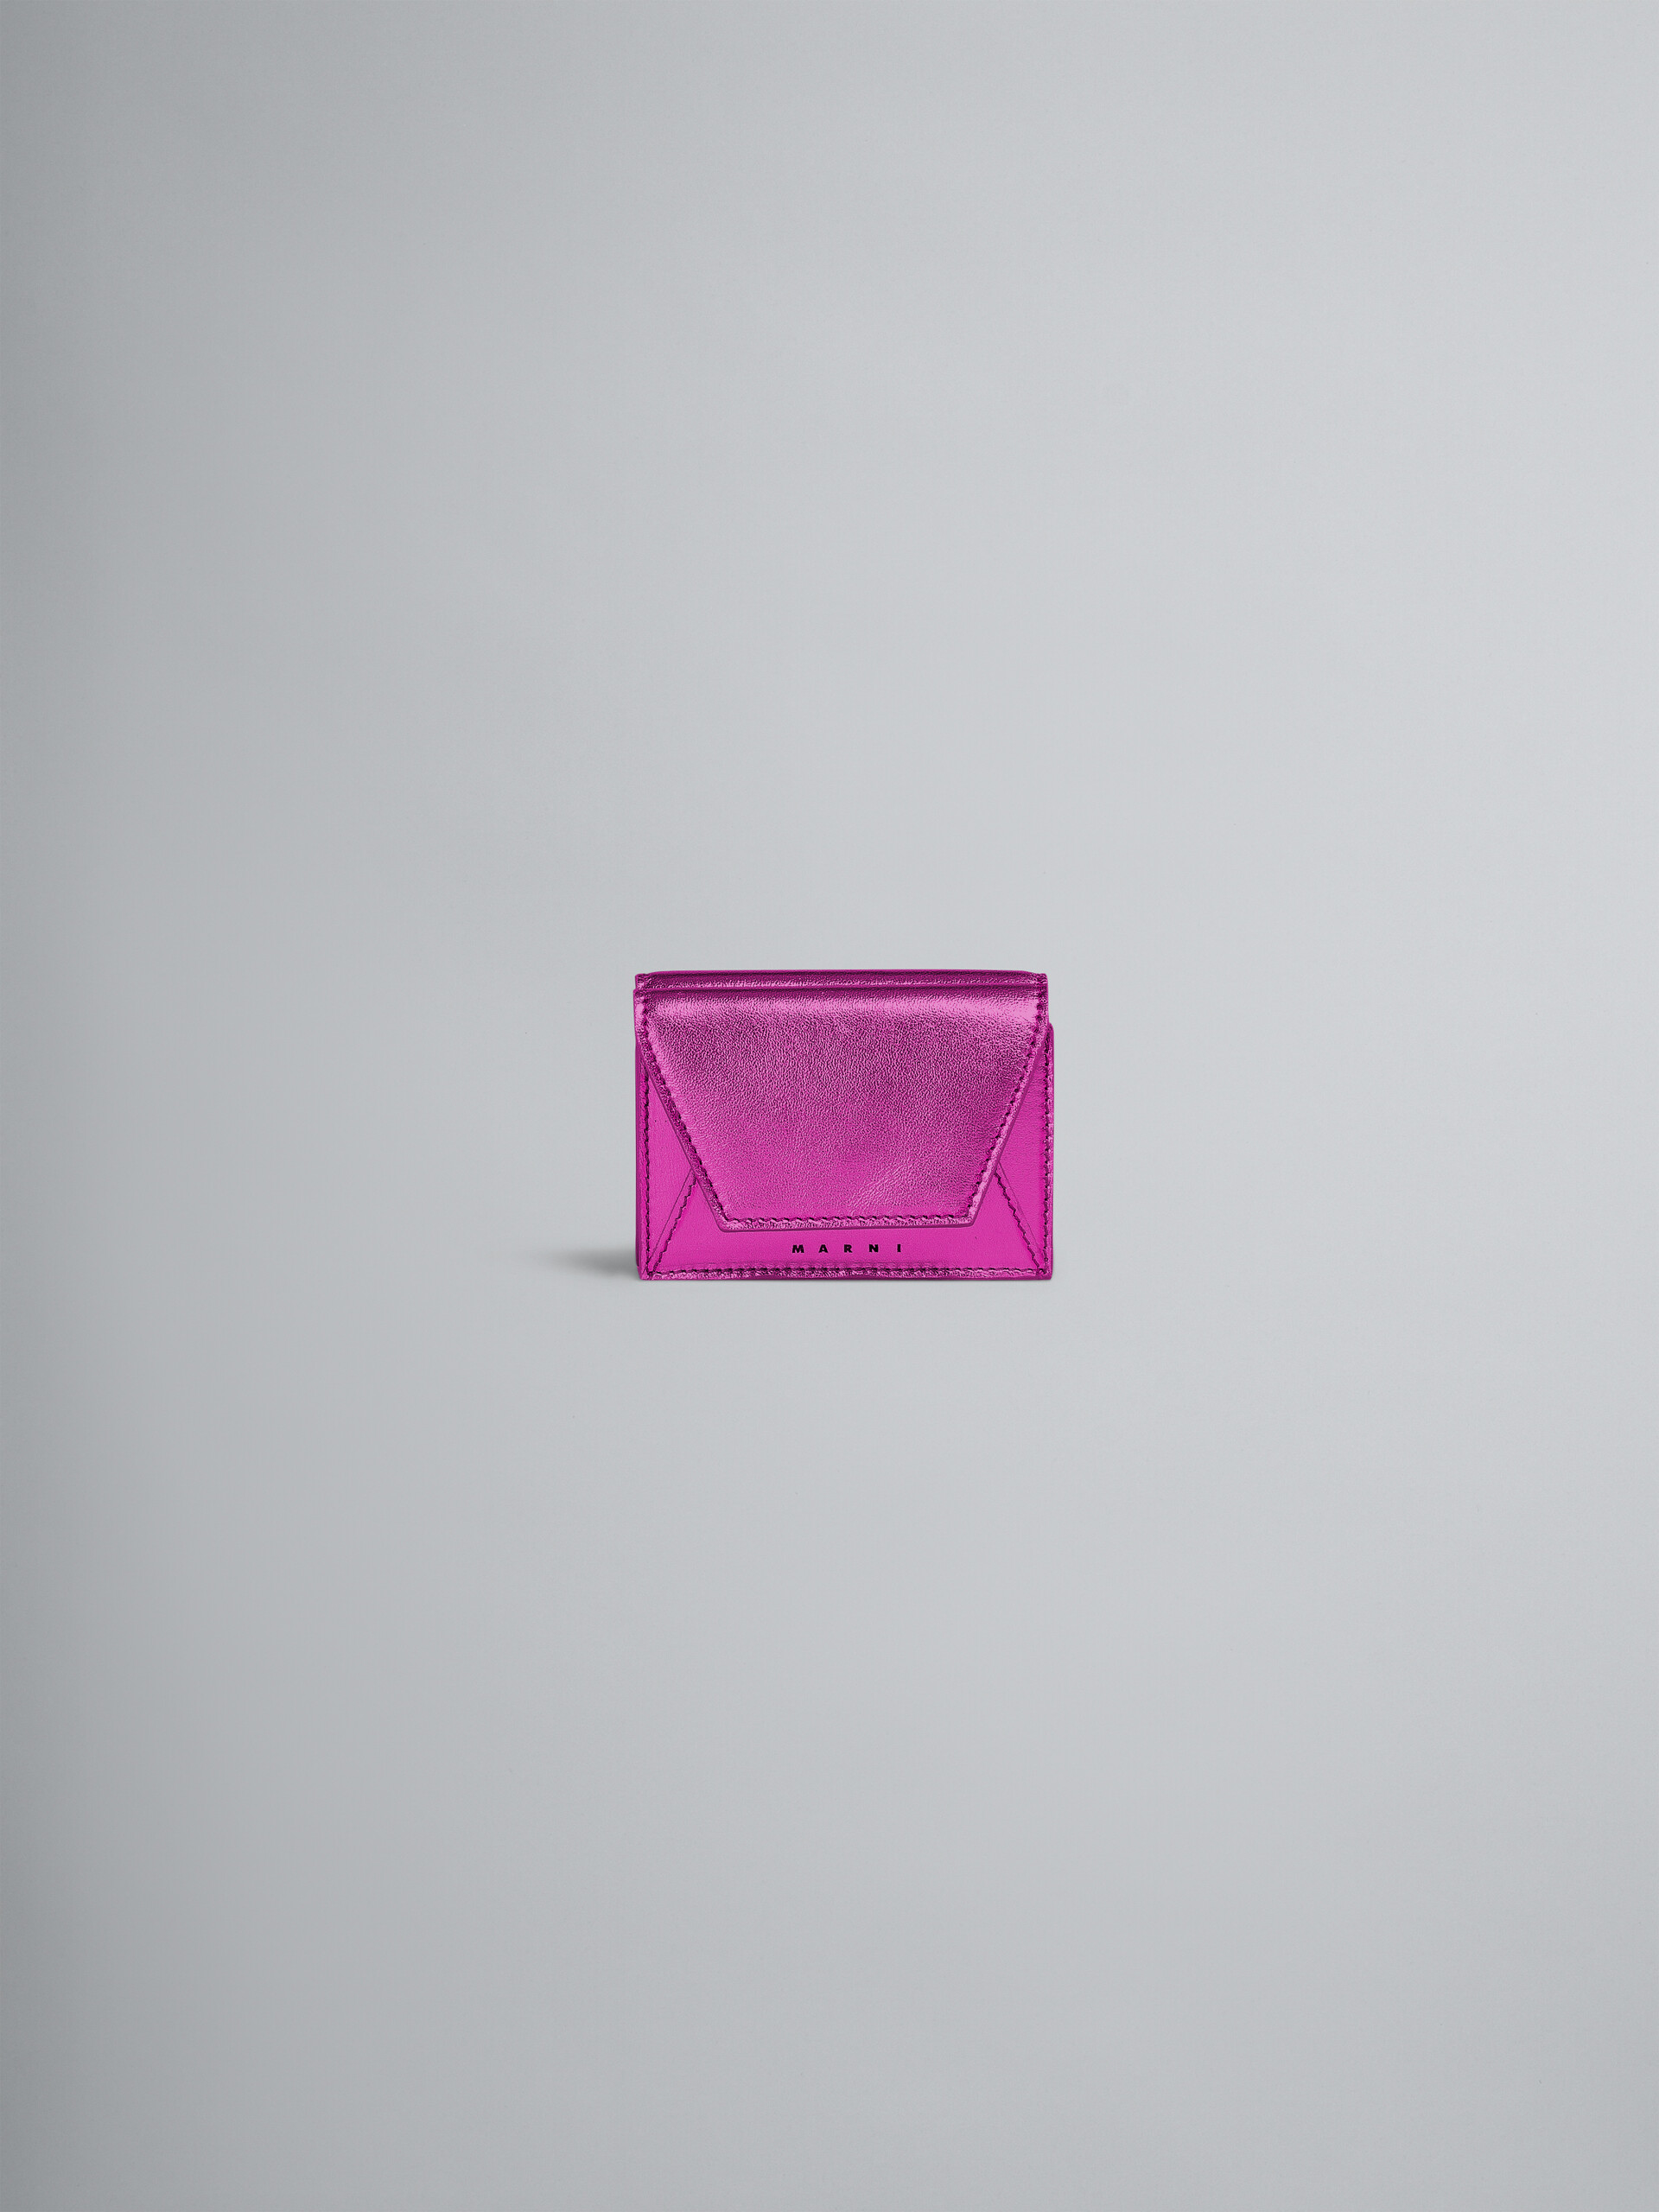 Portefeuille à trois volets en cuir nappa rose métallisé - Portefeuilles - Image 1